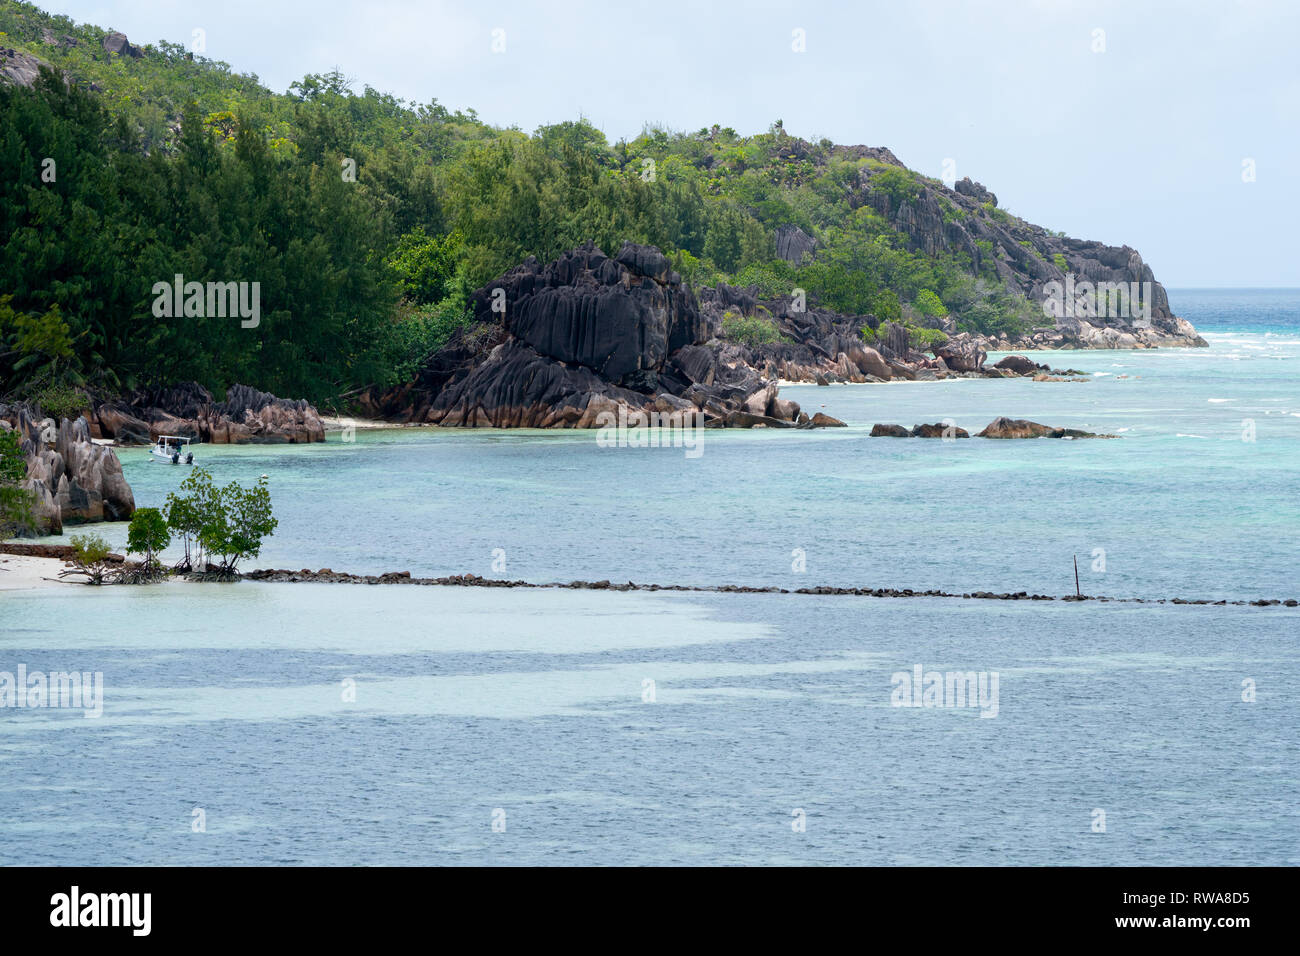 Curieuse Island ist eine kleine granitartigen Insel 1.13 sq mi (2,9 km2), die auf den Seychellen in der Nähe der Nordküste der Insel Praslin. Curieuse ist notab Stockfoto